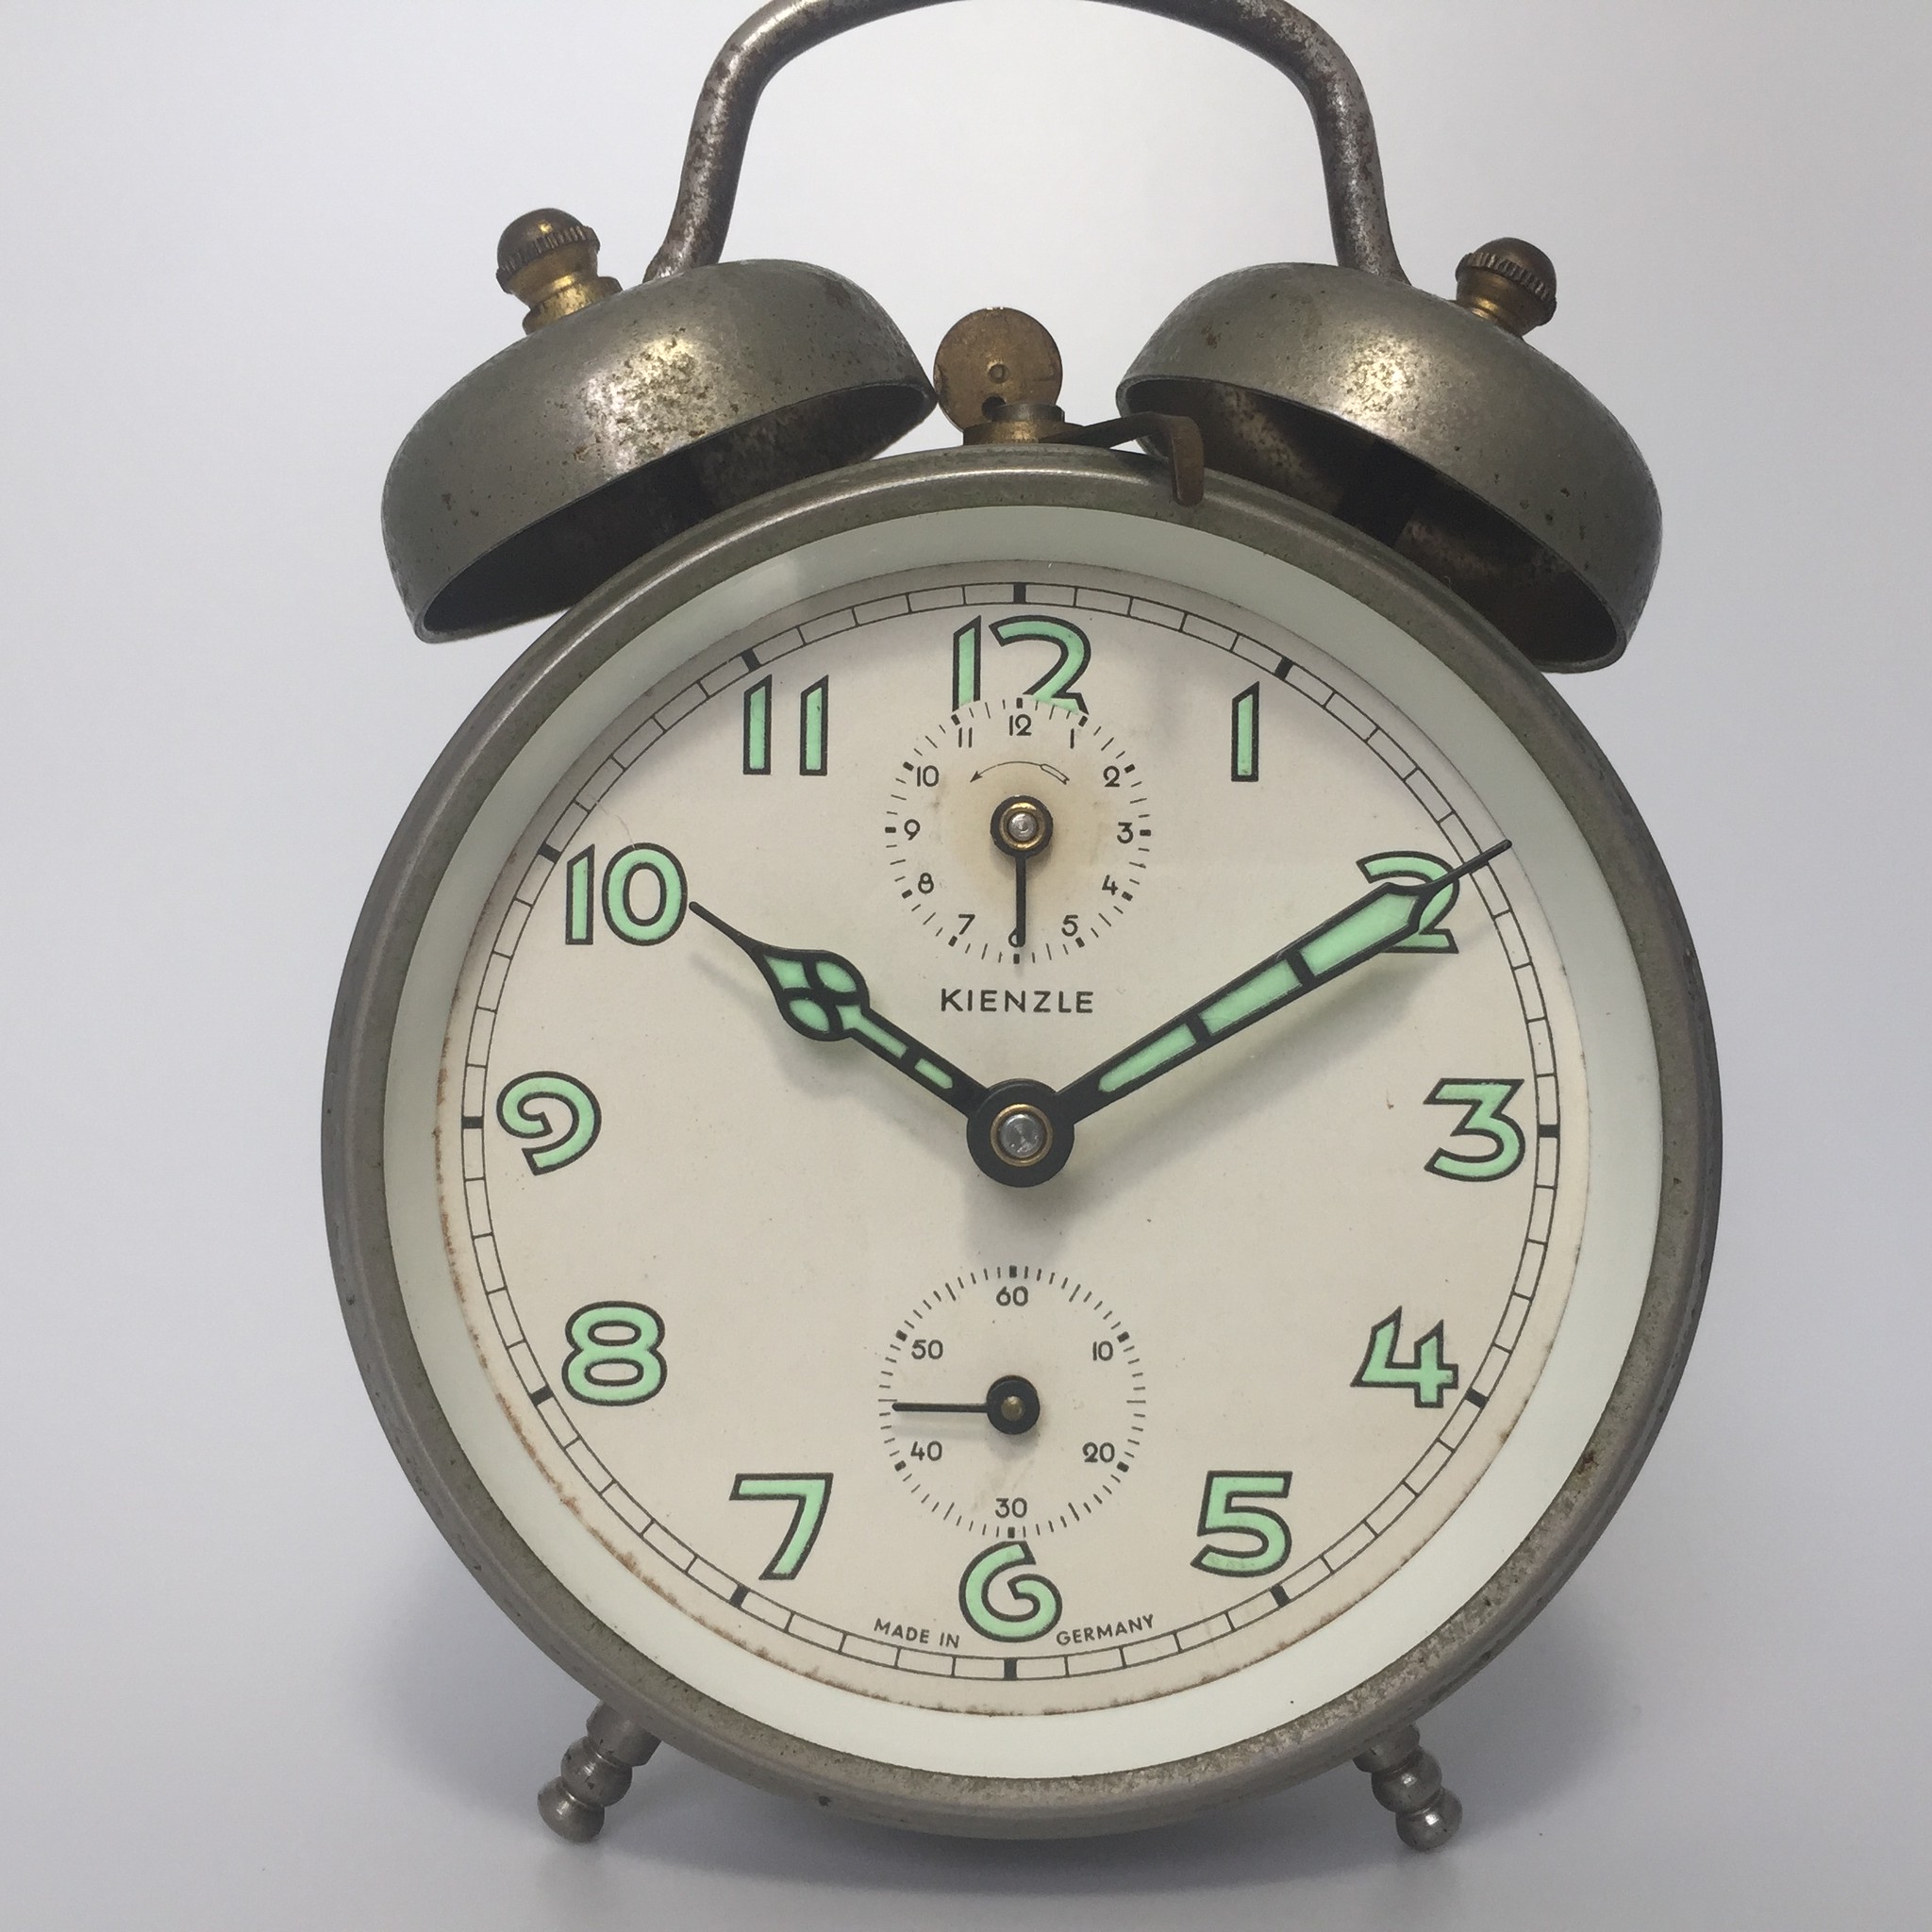 ドイツ製 キンツレー のダブルベル目覚まし時計をオーバーホールしました 路地裏の骨董カフェshop